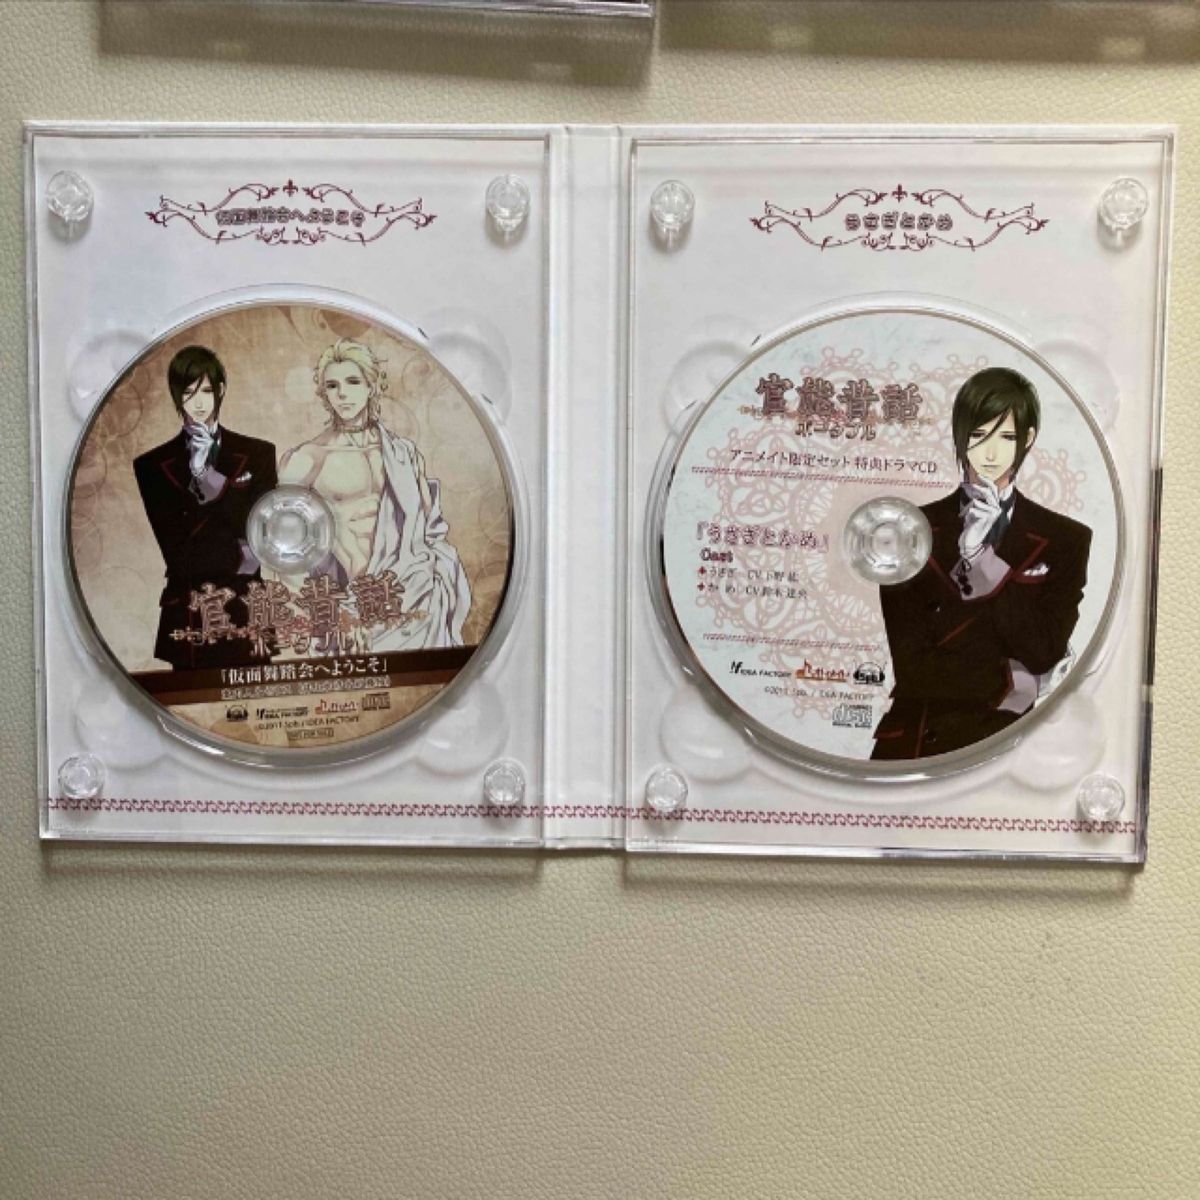 官能昔話ポータブル アニメイト限定セット「仮面舞踏会へようこそ」「うさぎとかめ」CD